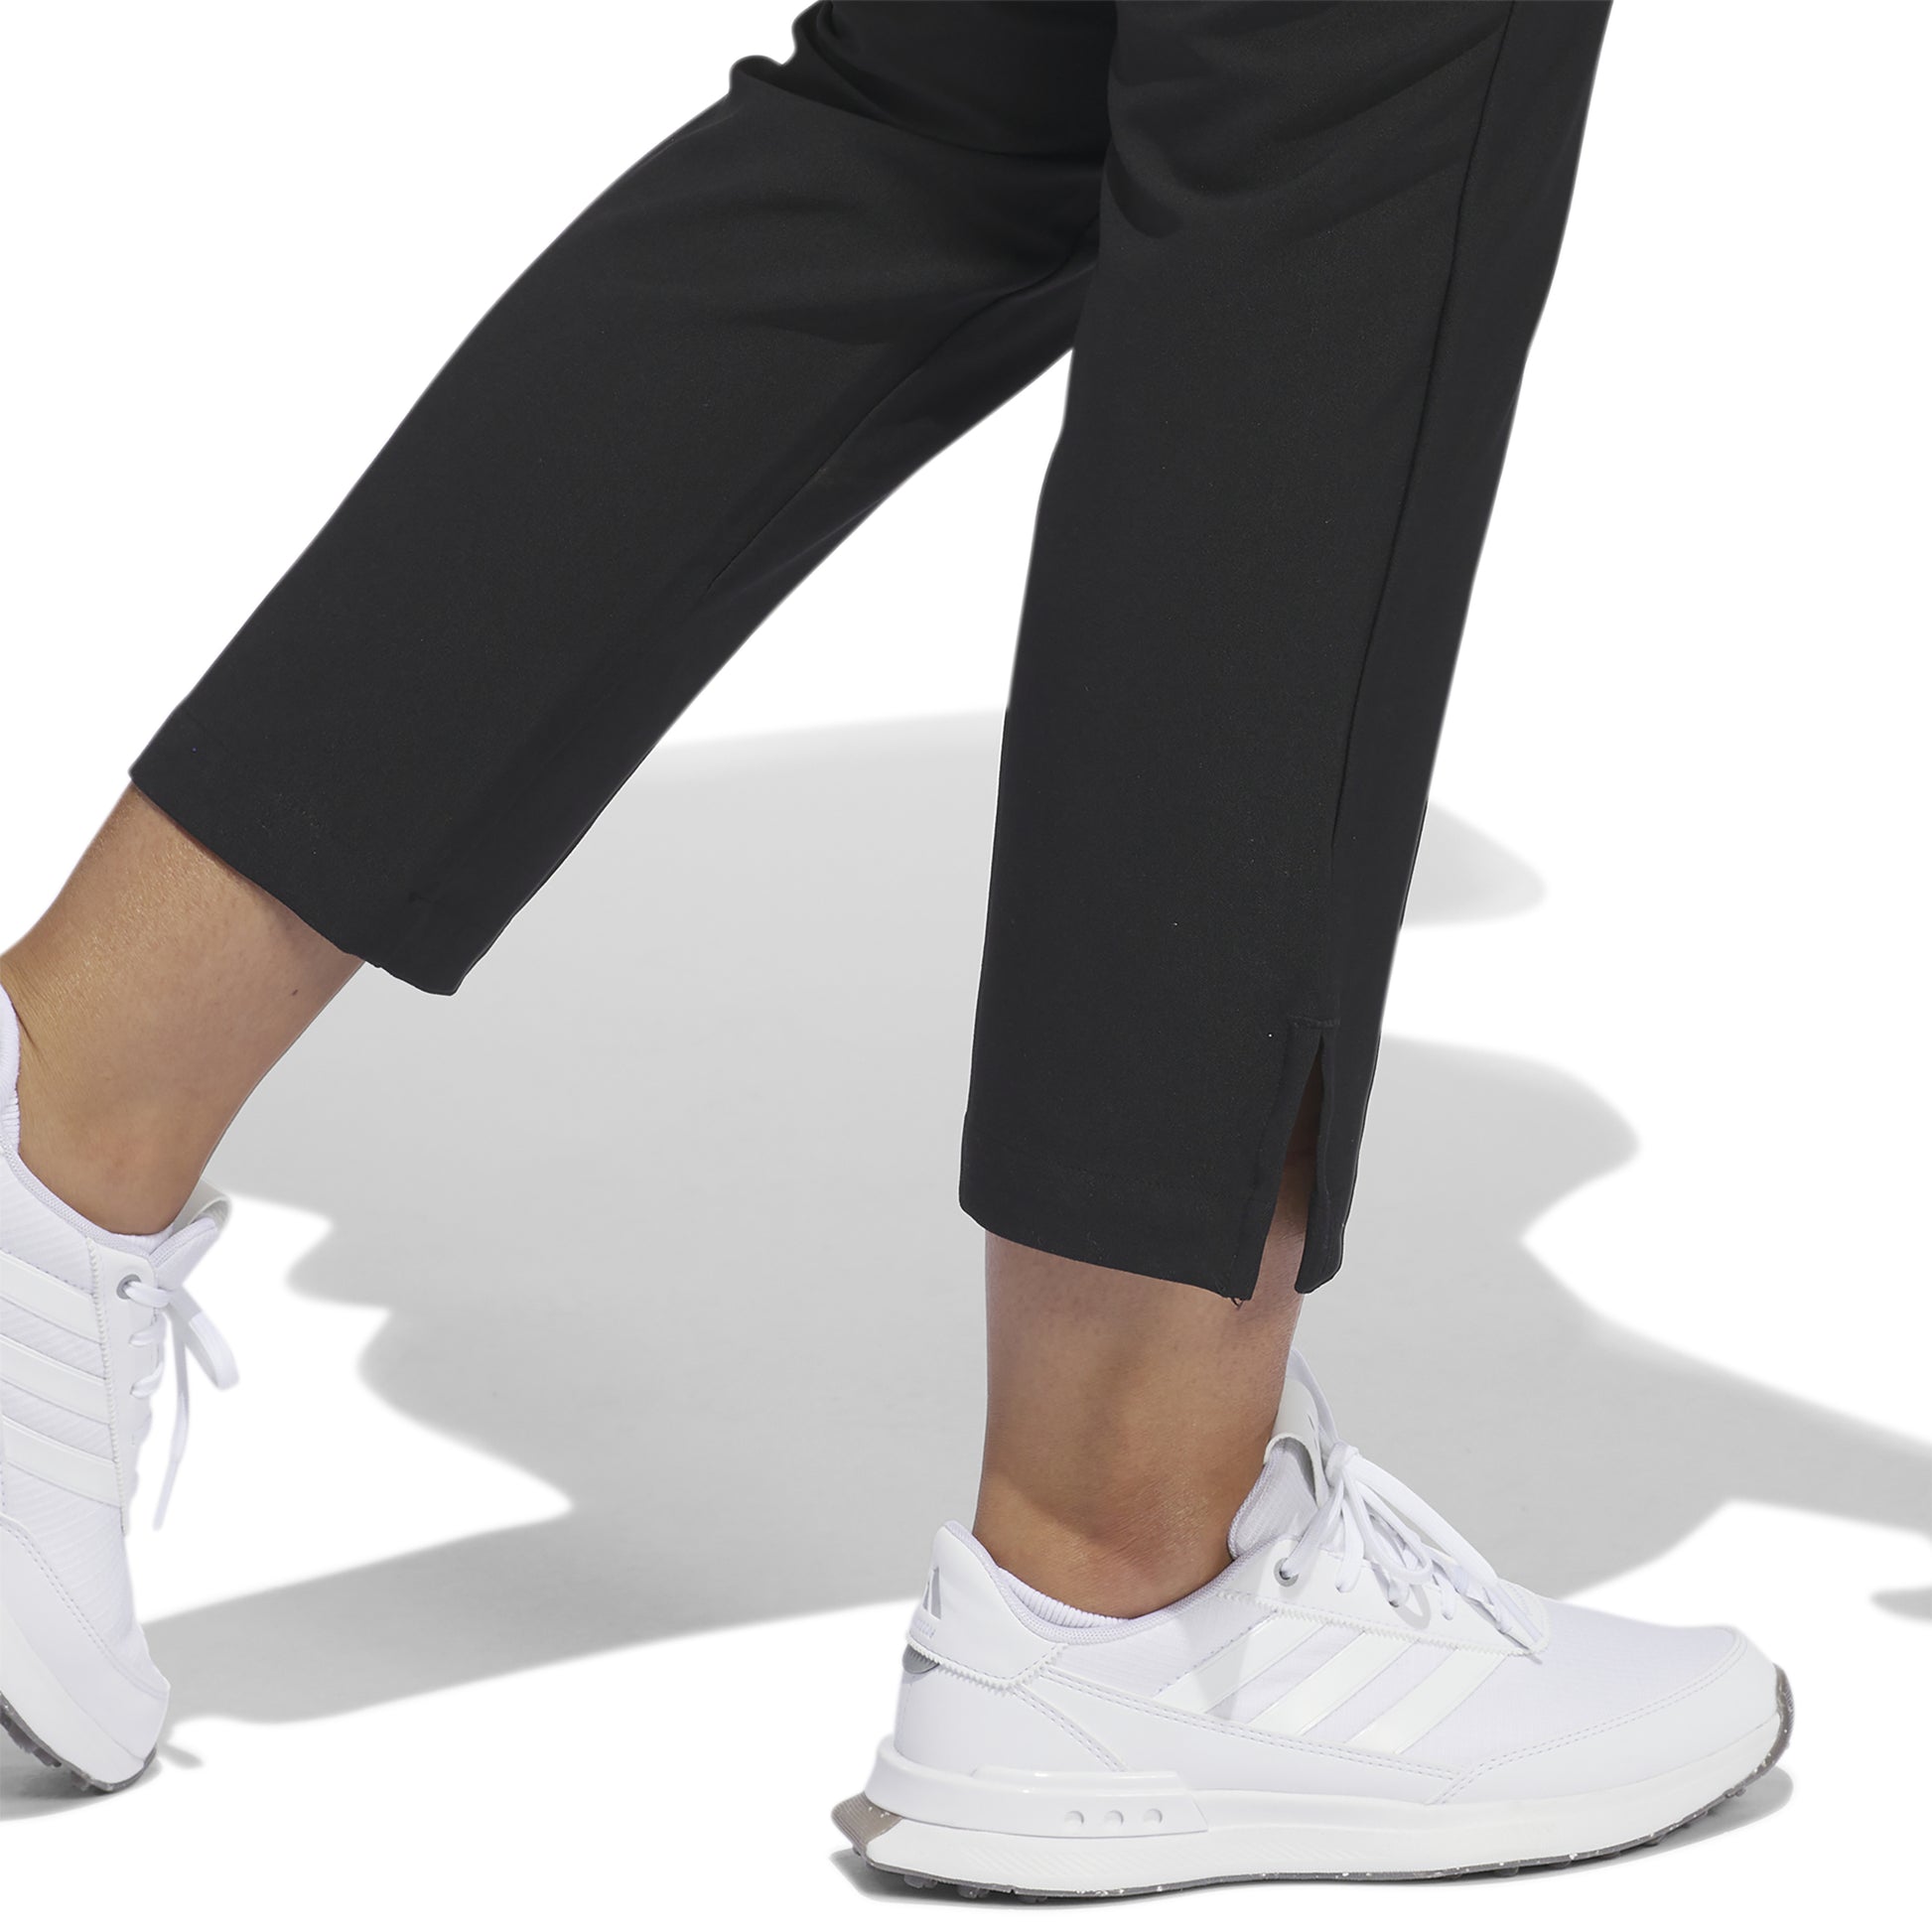 adidas Ladies 7/8 Golf Trousers in Black